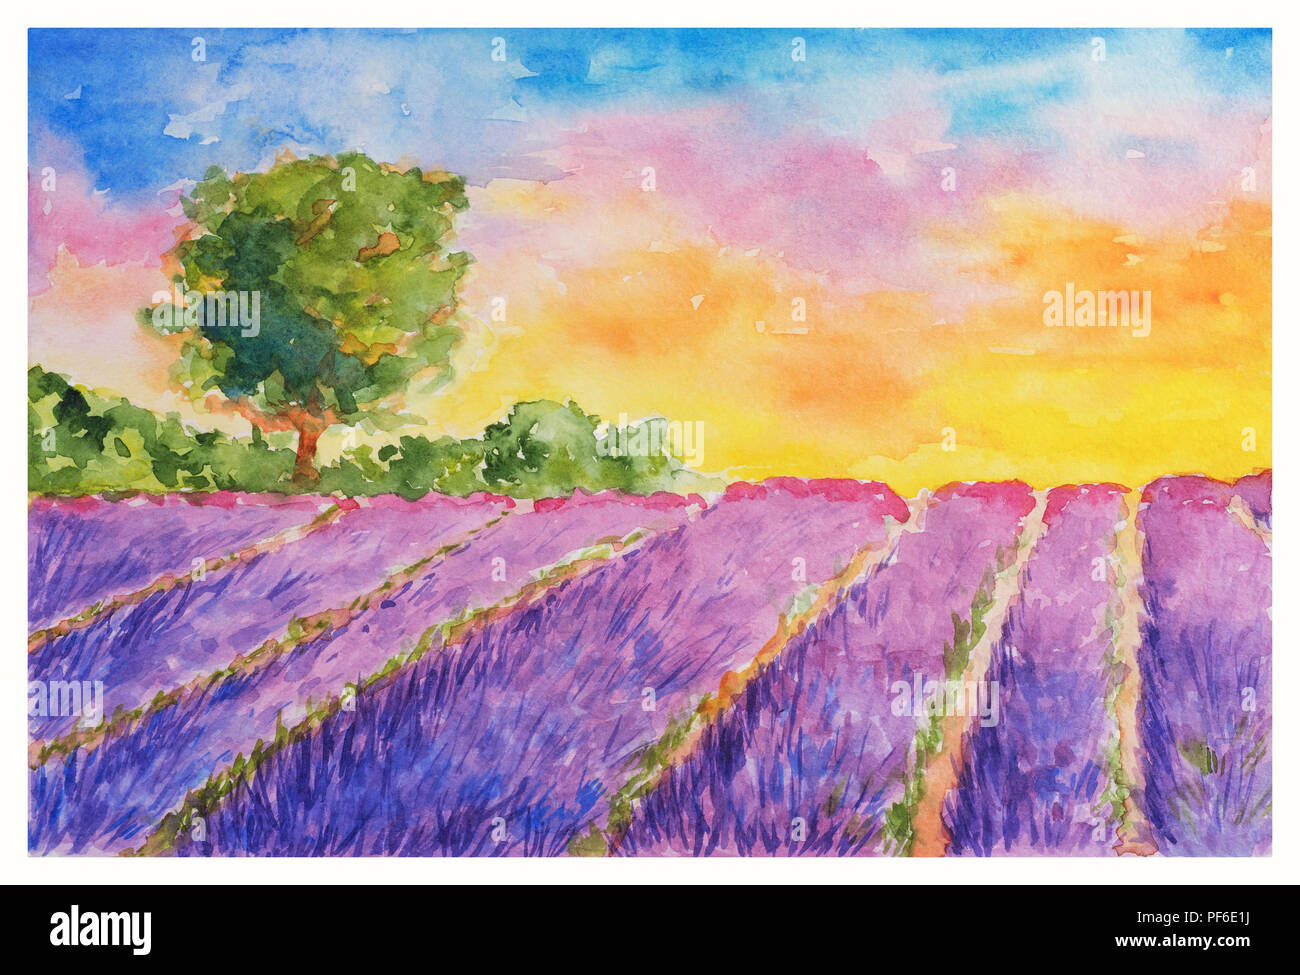 Sommer Landschaft: boomende Violett Lavendel Feld und einzelnen Baum bei Sonnenuntergang, Aquarell Hand gezeichnet und gemalt Stockfoto